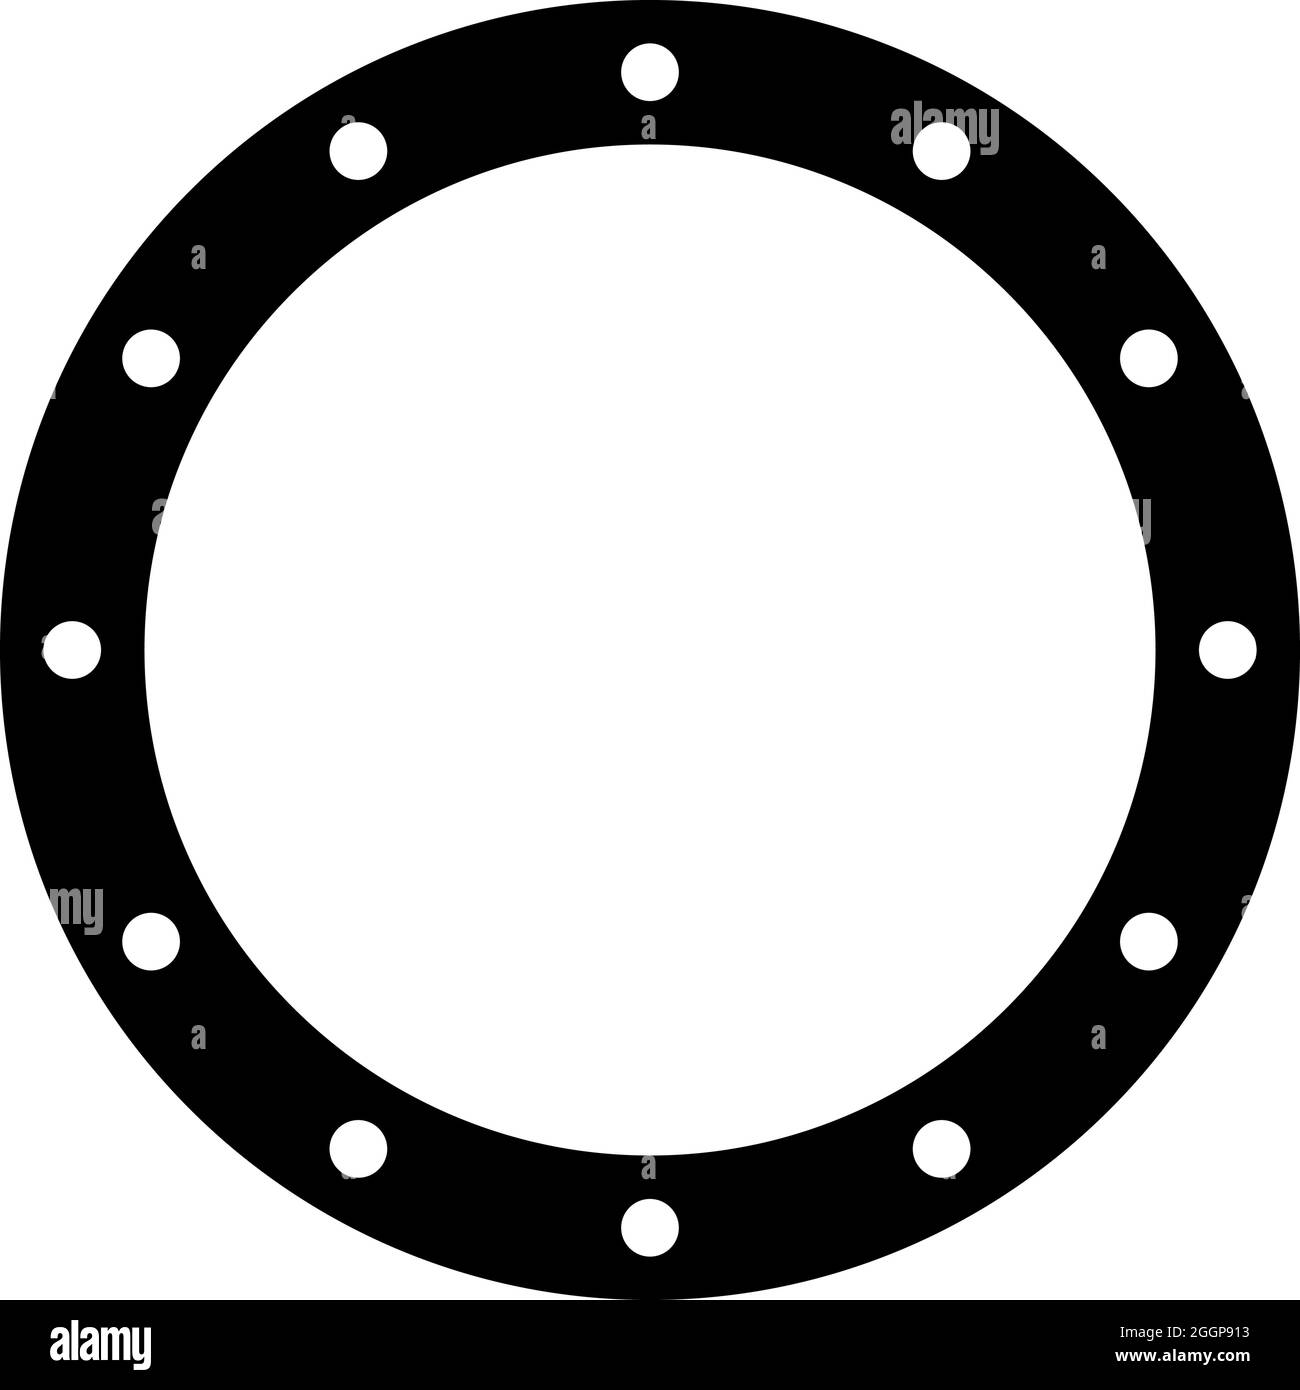 Rechteckige schwarze gummidichtung mit abgerundeten elliptischen ecken und  vier runden löchern